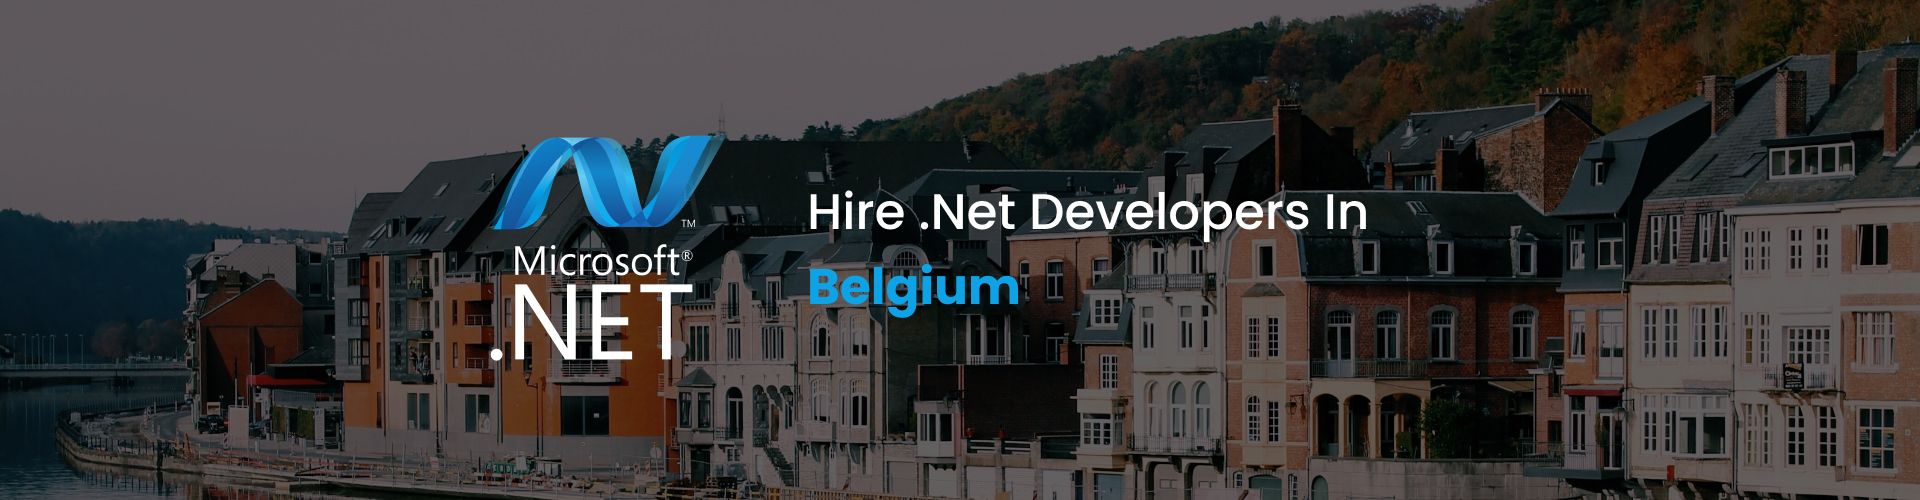 hire .net developers in belgium